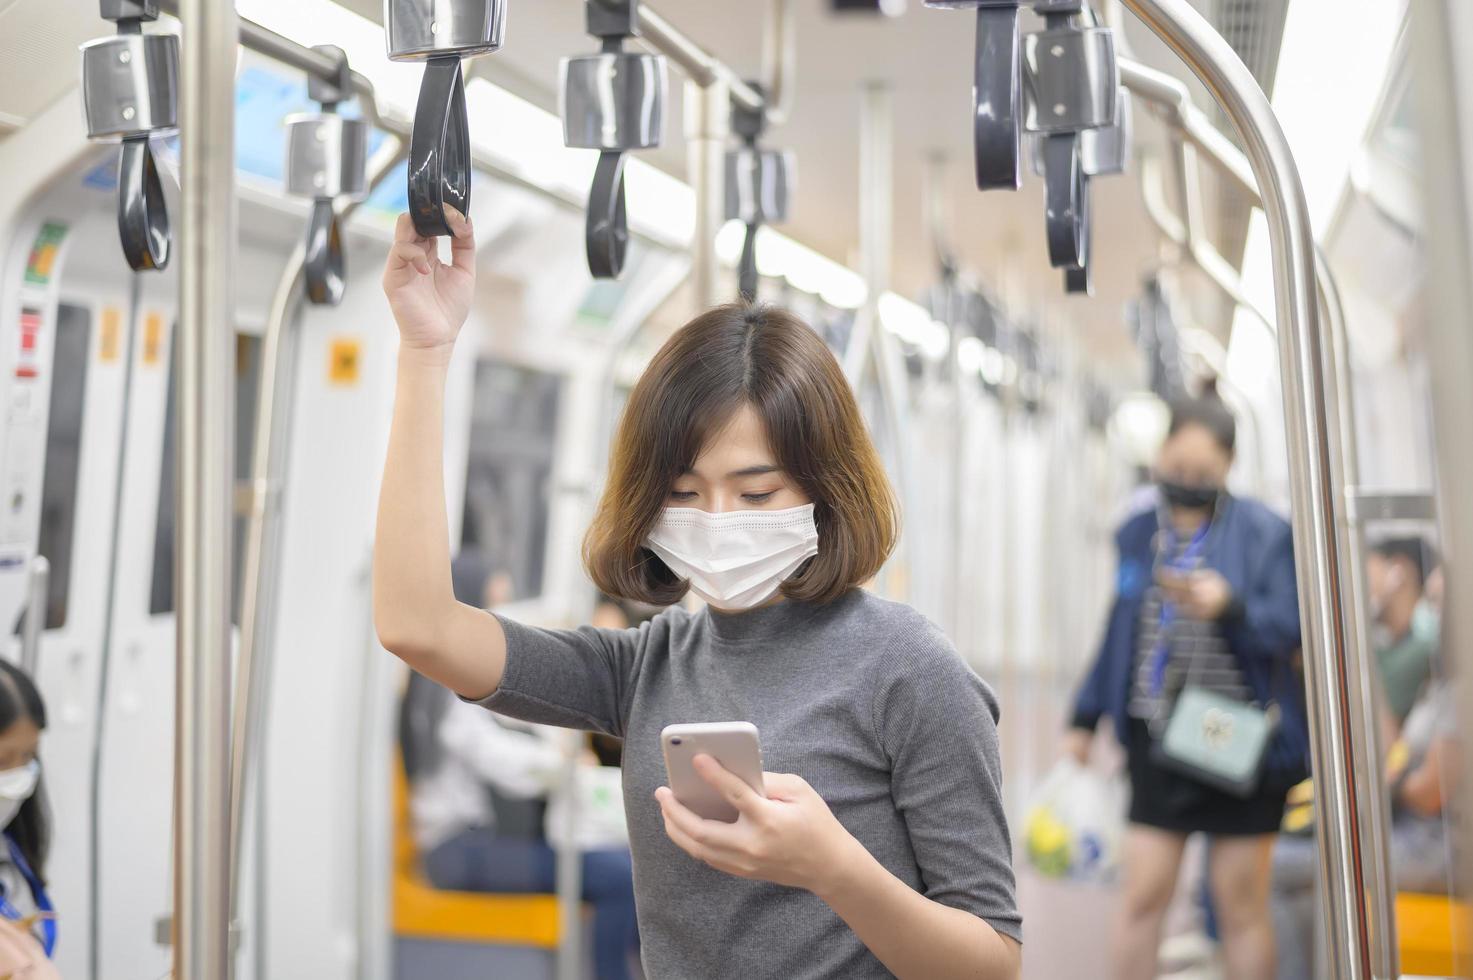 junge Frau trägt Schutzmaske in der U-Bahn, Covid-19-Schutz, Sicherheitsreisen, neue Normalität, soziale Distanzierung, Sicherheitstransport, Reisen im Rahmen des Pandemiekonzepts. foto